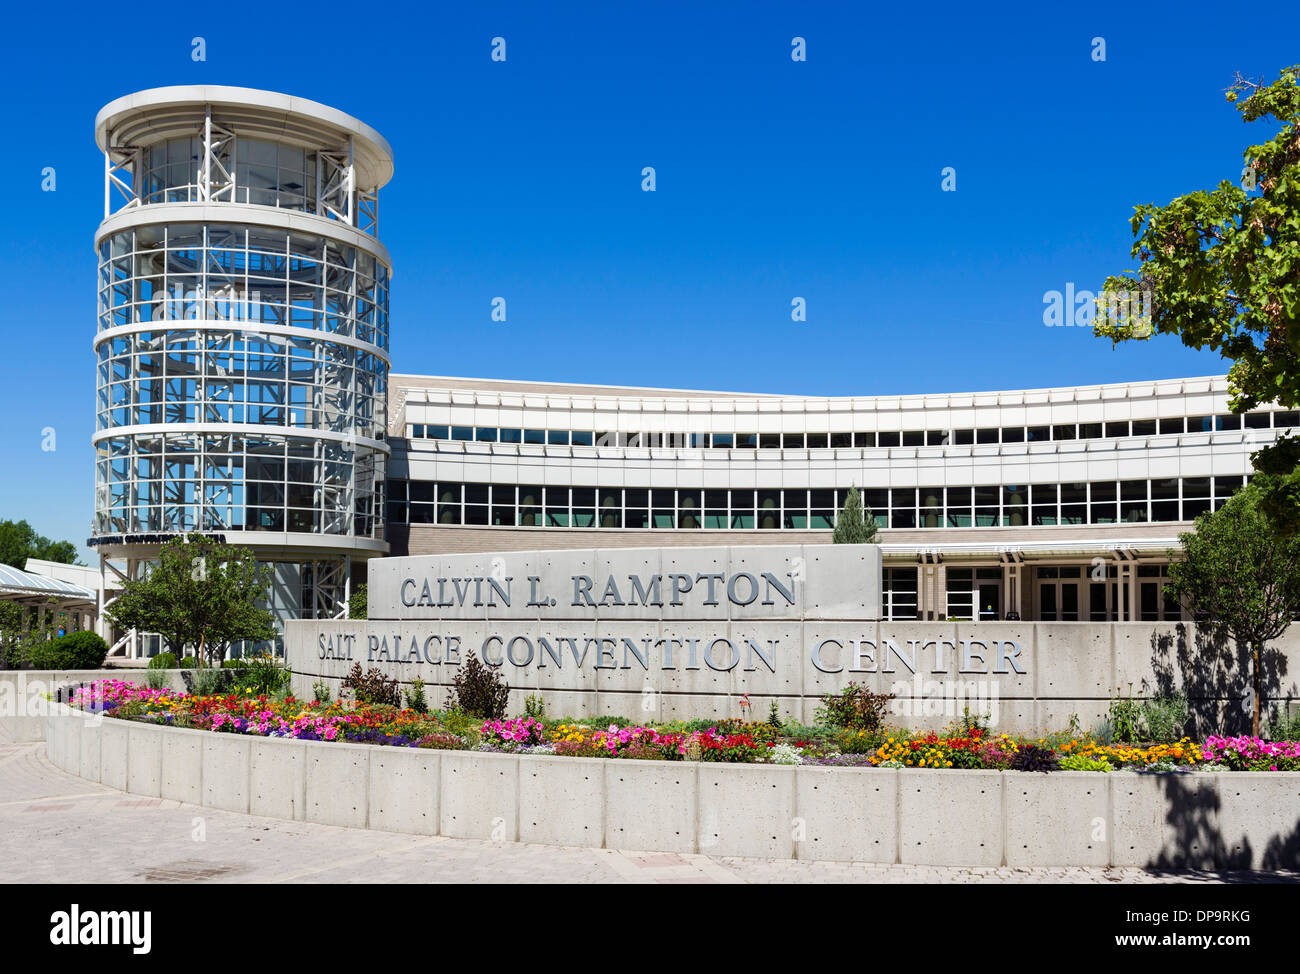 Le Calvin L Rampton, Salt Palace Convention Center West Temple, Salt Lake City, Utah, USA Banque D'Images